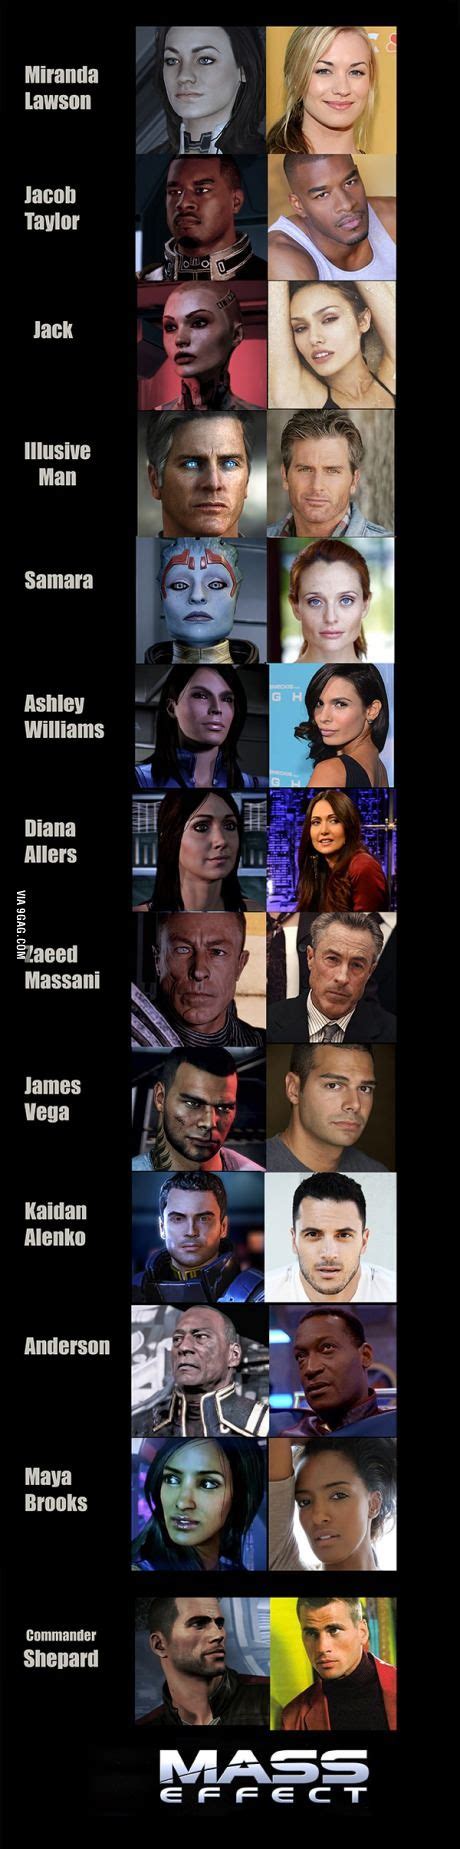 Mass Effect Human Face Model Mass Effect Mass Effect Art Mass